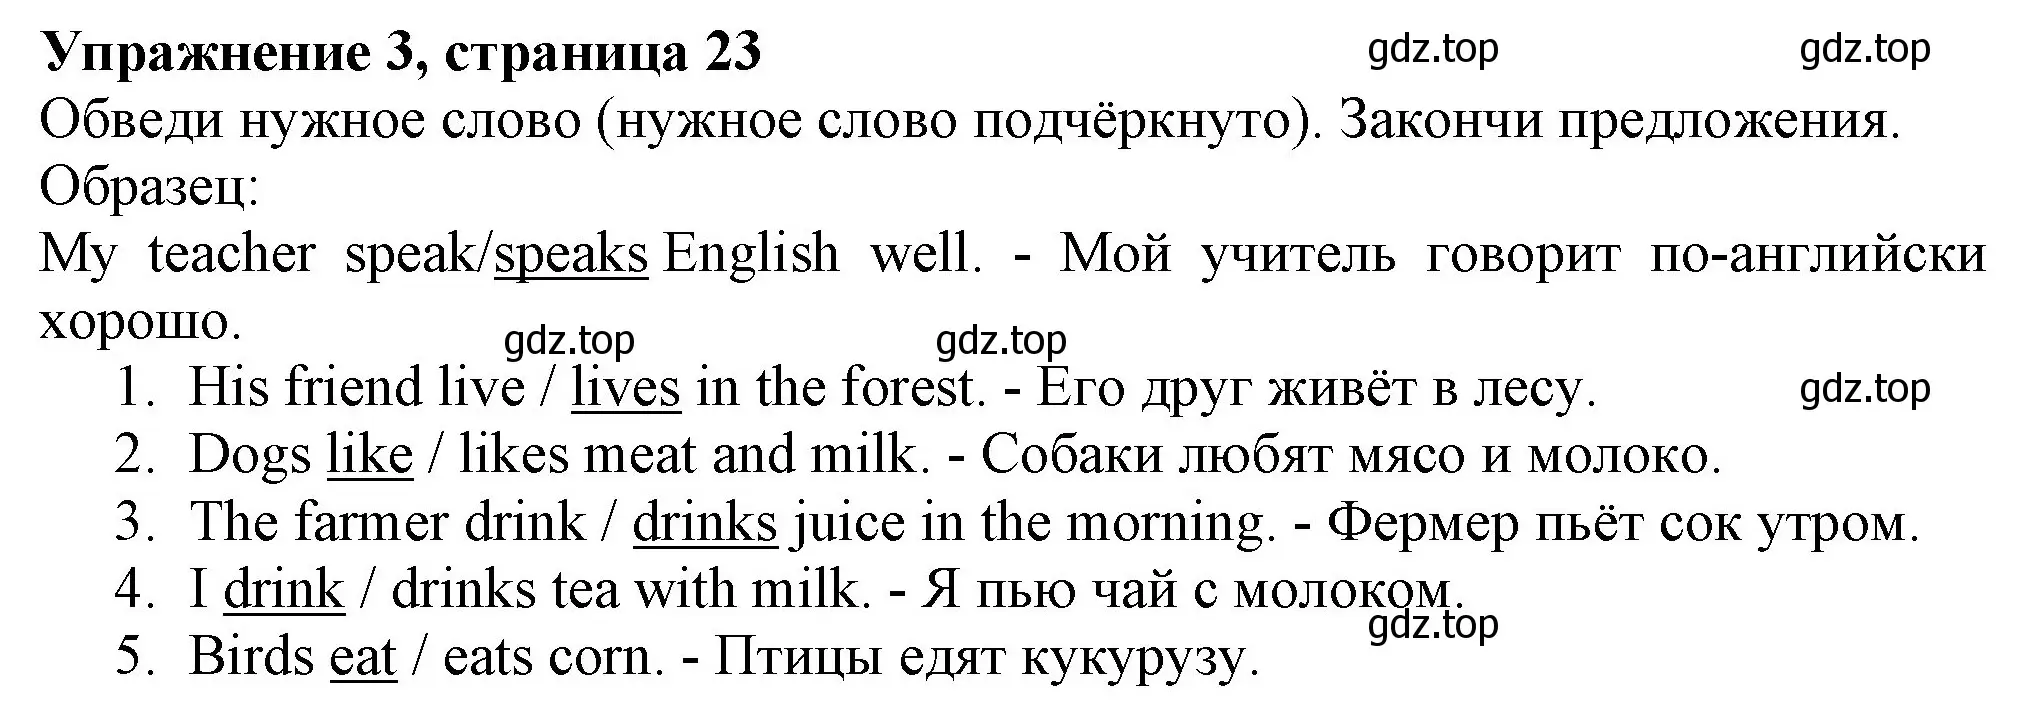 Решение номер 3 (страница 23) гдз по английскому языку 3 класс Биболетова, Денисенко, рабочая тетрадь